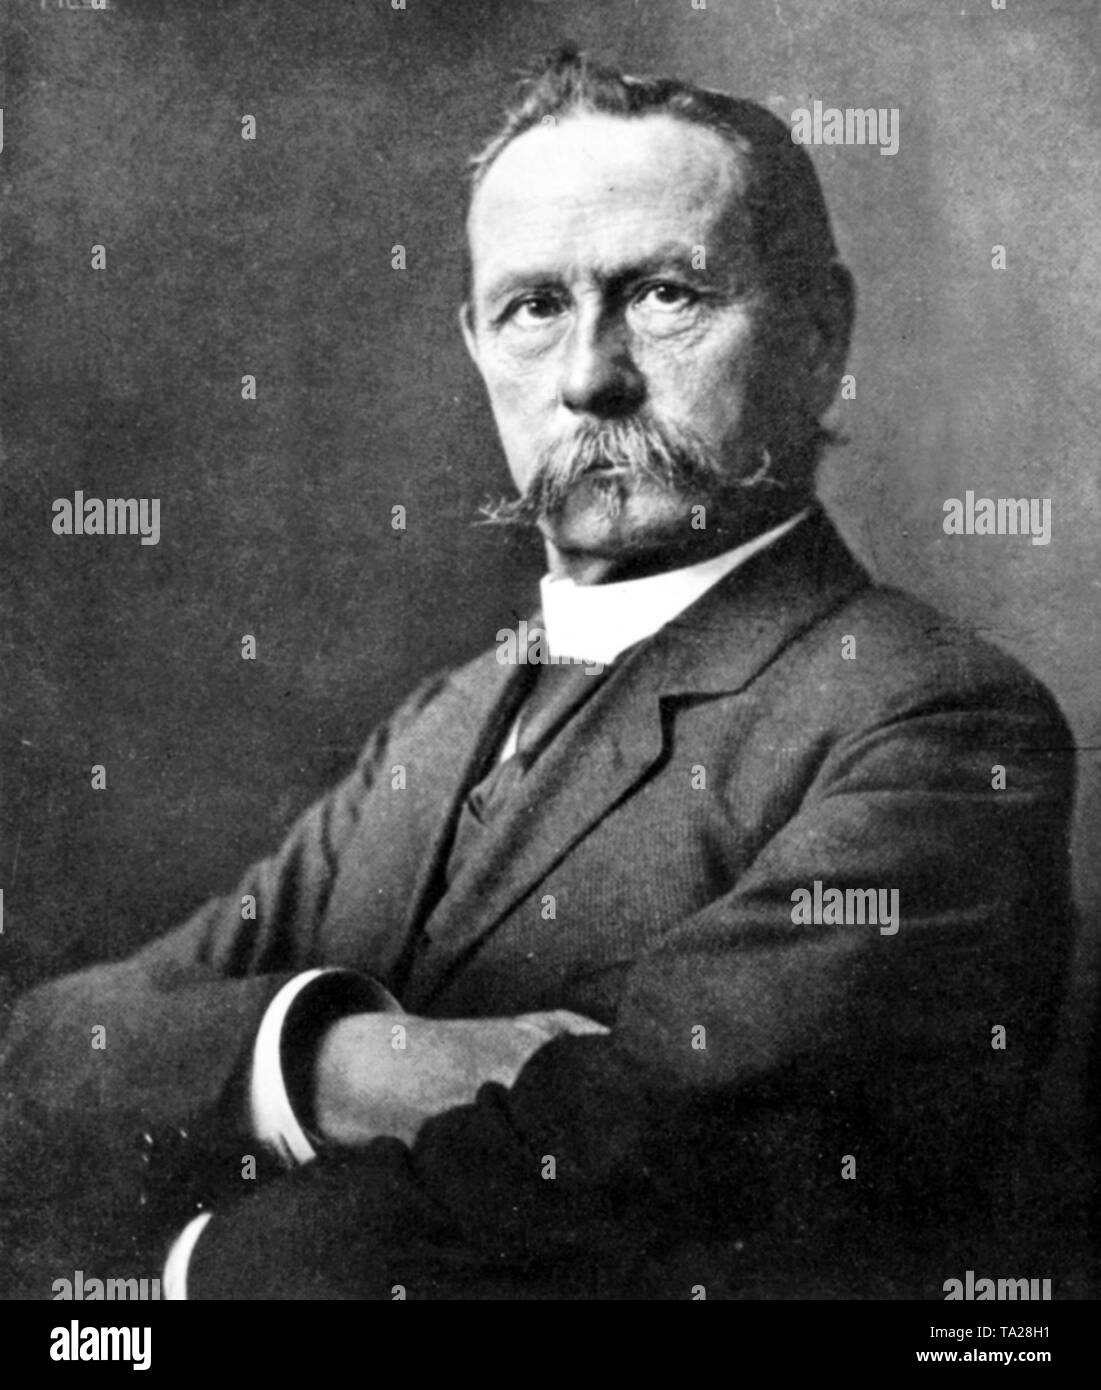 Der Automobilpionier Carl Friedrich Benz (1844-1929), Erbauer der ersten Automobile, 1883 gründete die Firma Benz & Cie., die mit der Daimler-Benz AG im Jahr 1926 zusammengeführt. Stockfoto